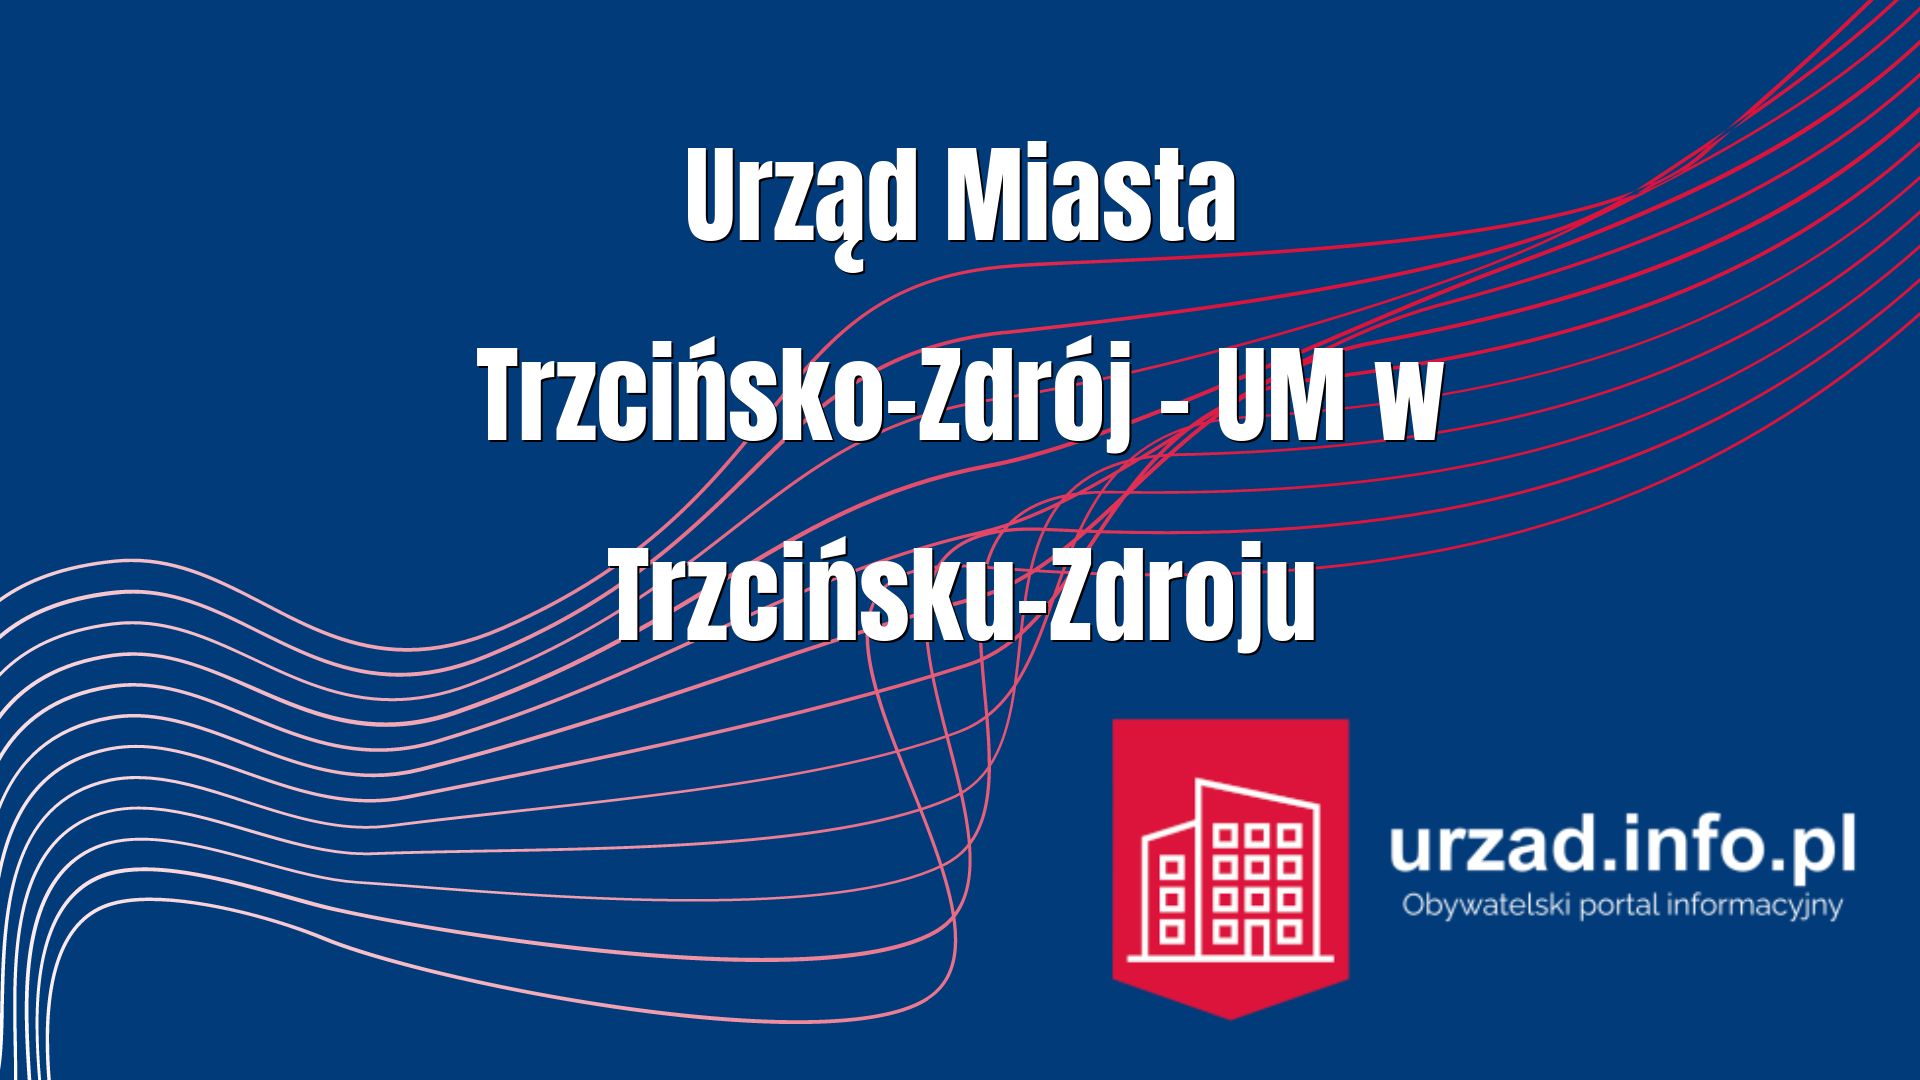 Urząd Miasta Trzcińsko-Zdrój – UM w Trzcińsku-Zdroju